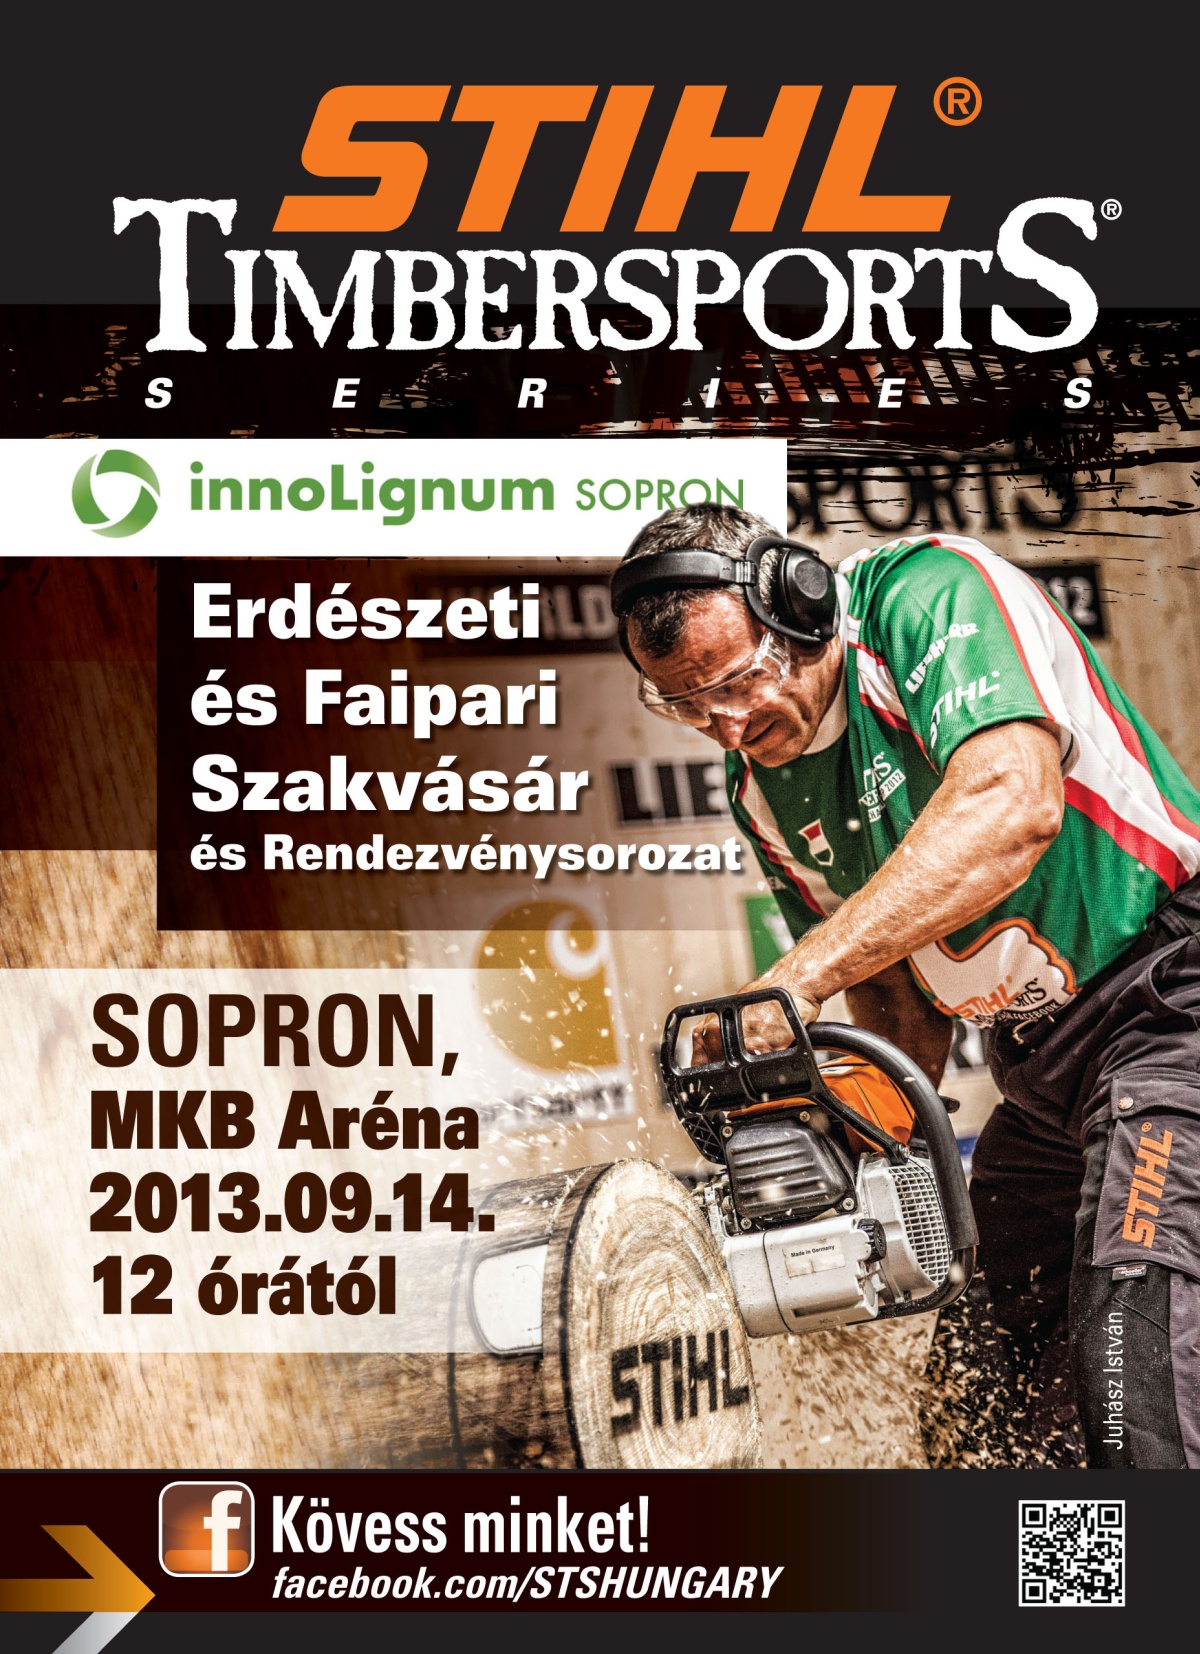 STIHL Timbersports bemutató és gyermekprogramok is lesznek az innoLignum Sopron erdészeti kiállításon